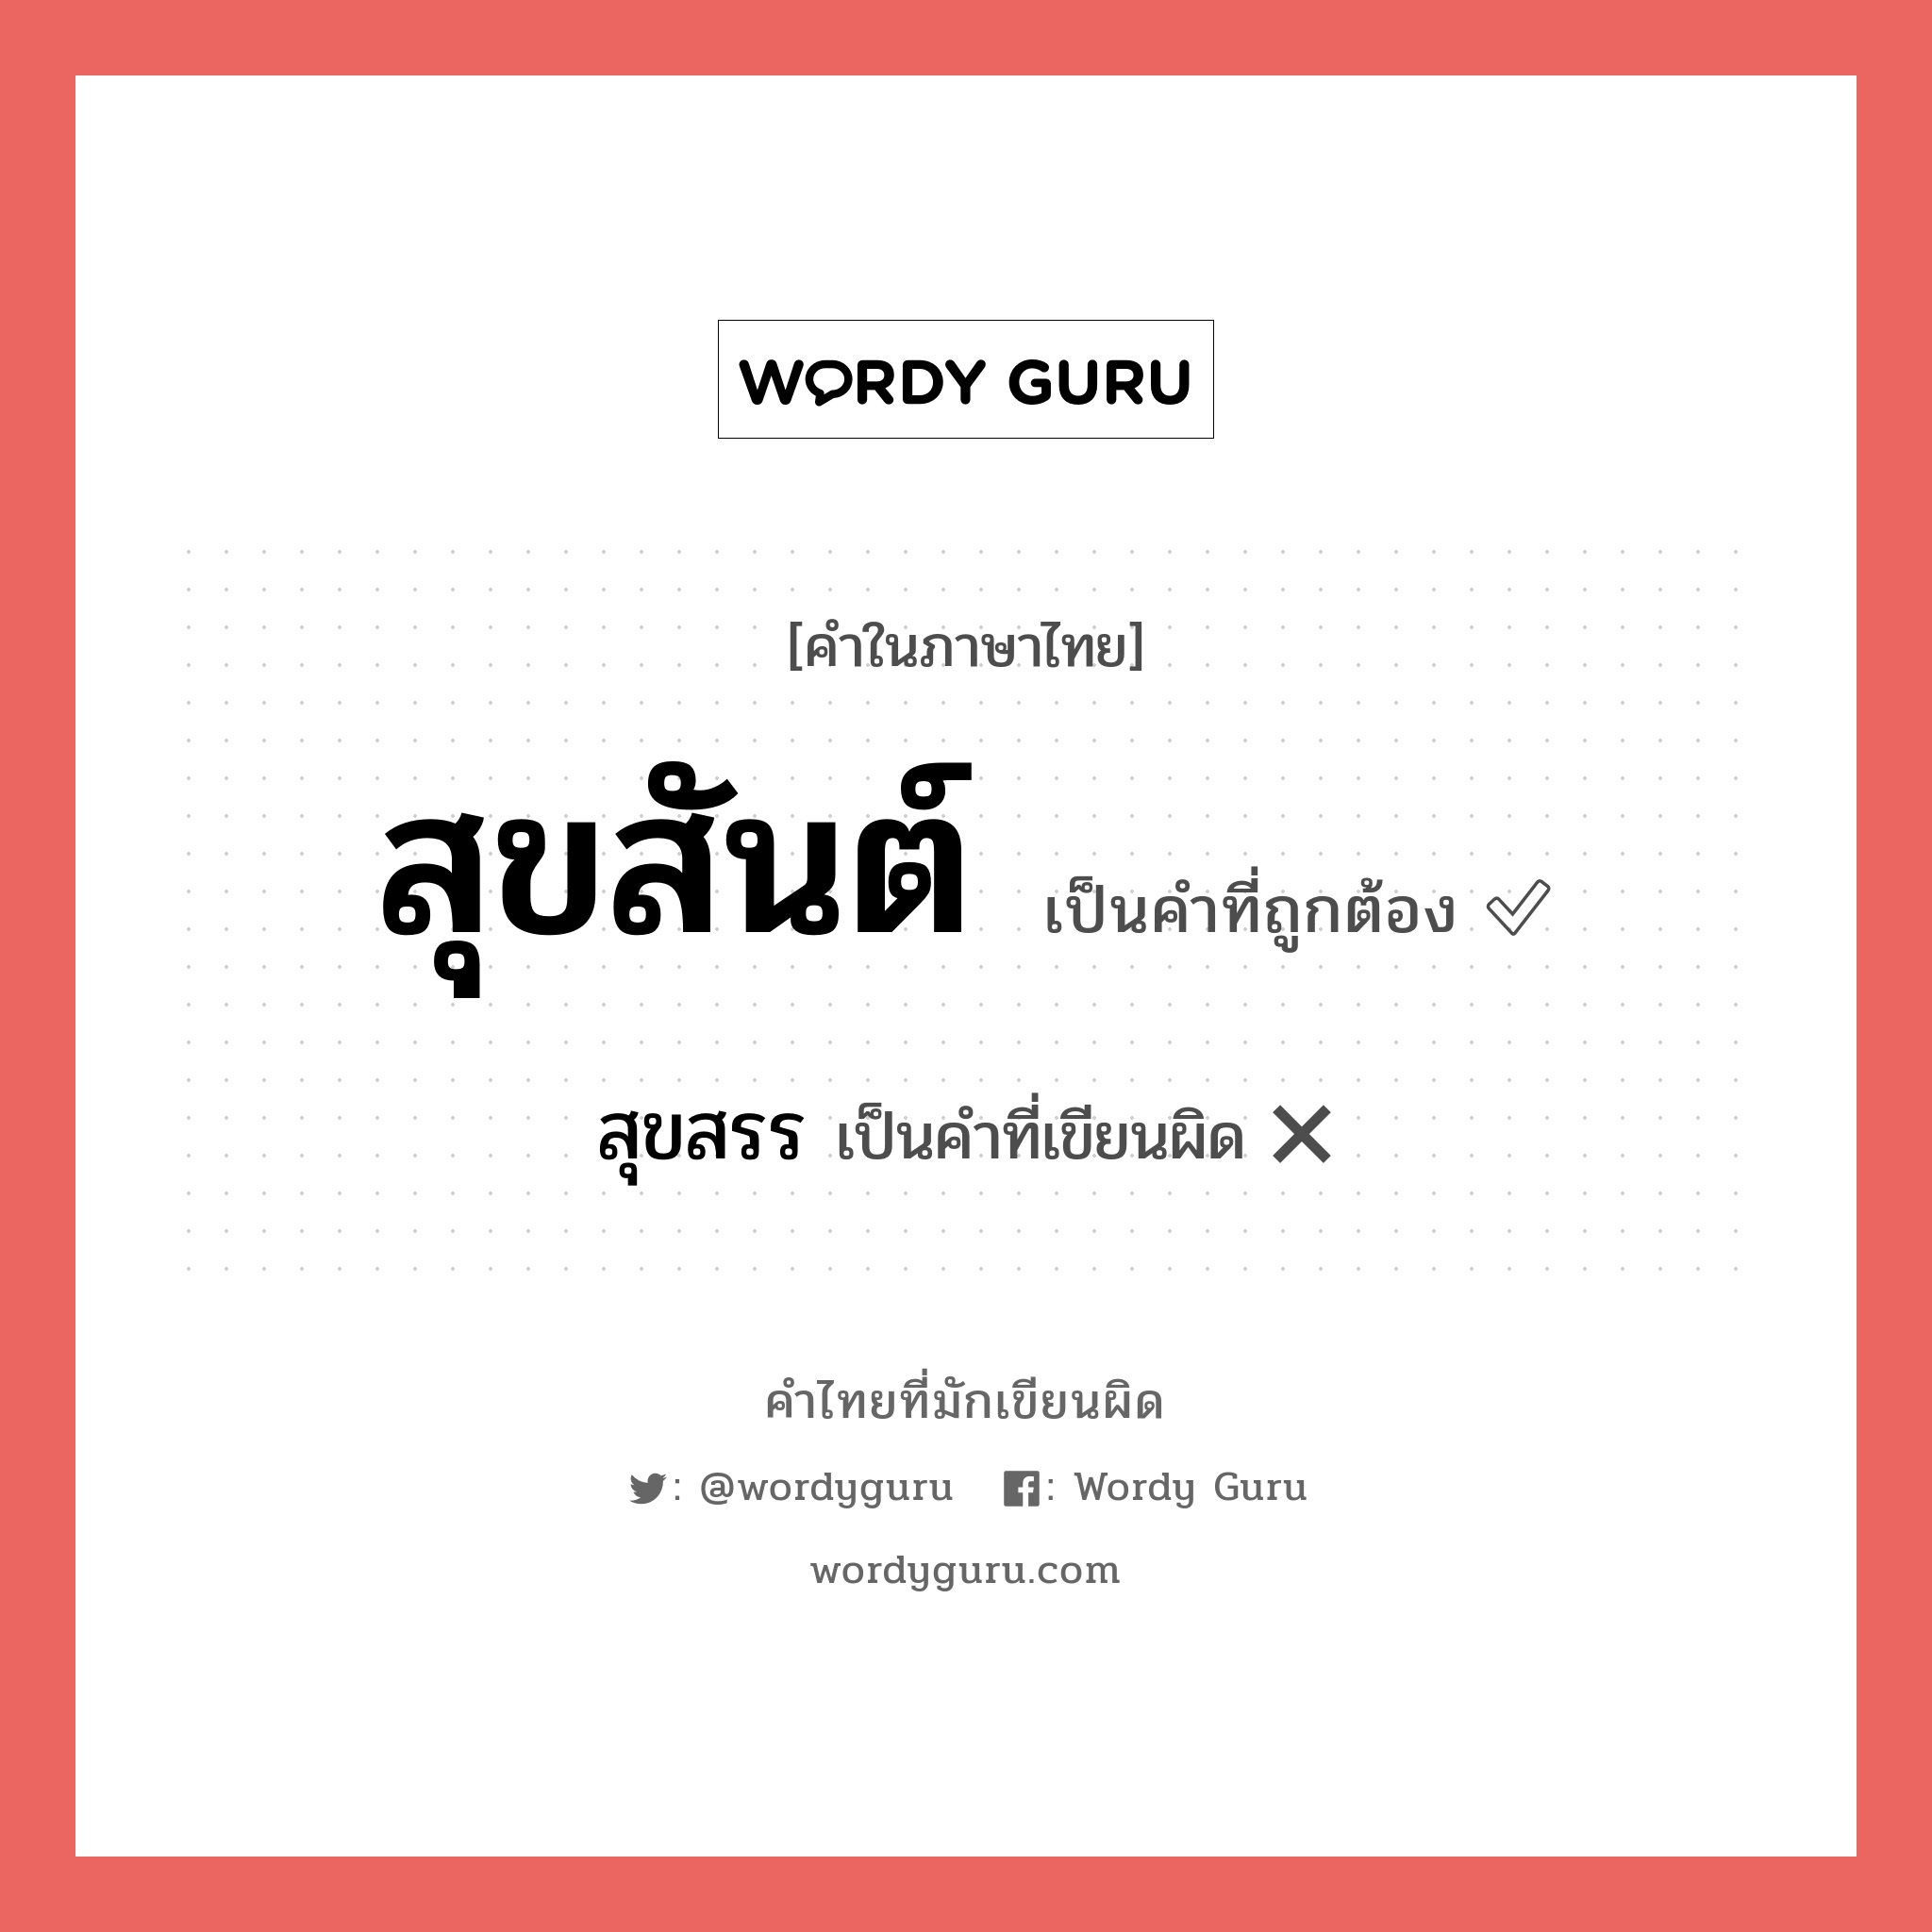 สุขสรร หรือ สุขสันต์ คำไหนเขียนถูก?, คำในภาษาไทยที่มักเขียนผิด สุขสรร คำที่ผิด ❌ สุขสันต์